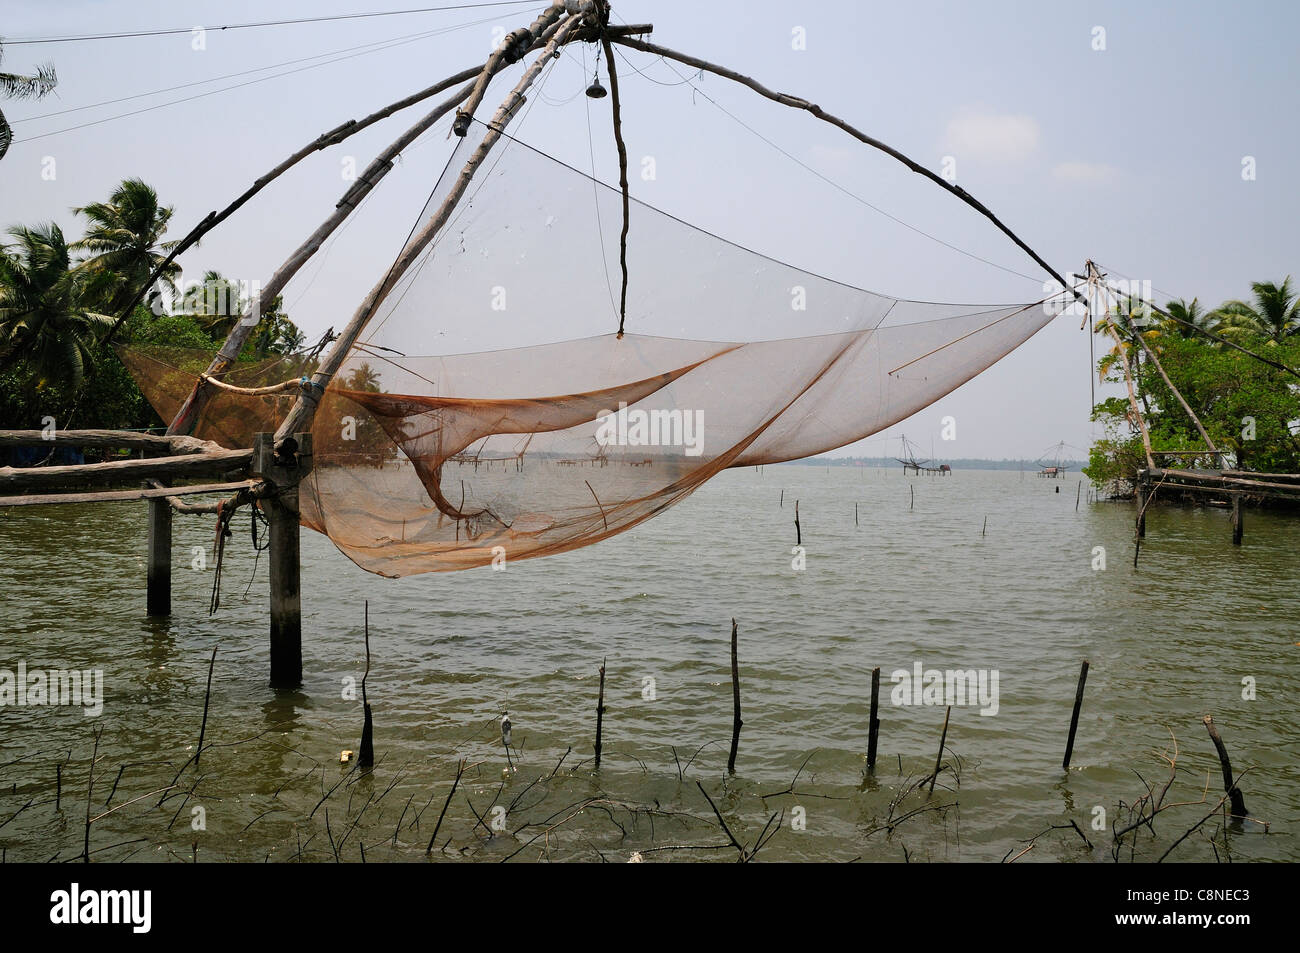 Chinese fishing nets (Cheena vala) on a tidal lake near Fort Kochi